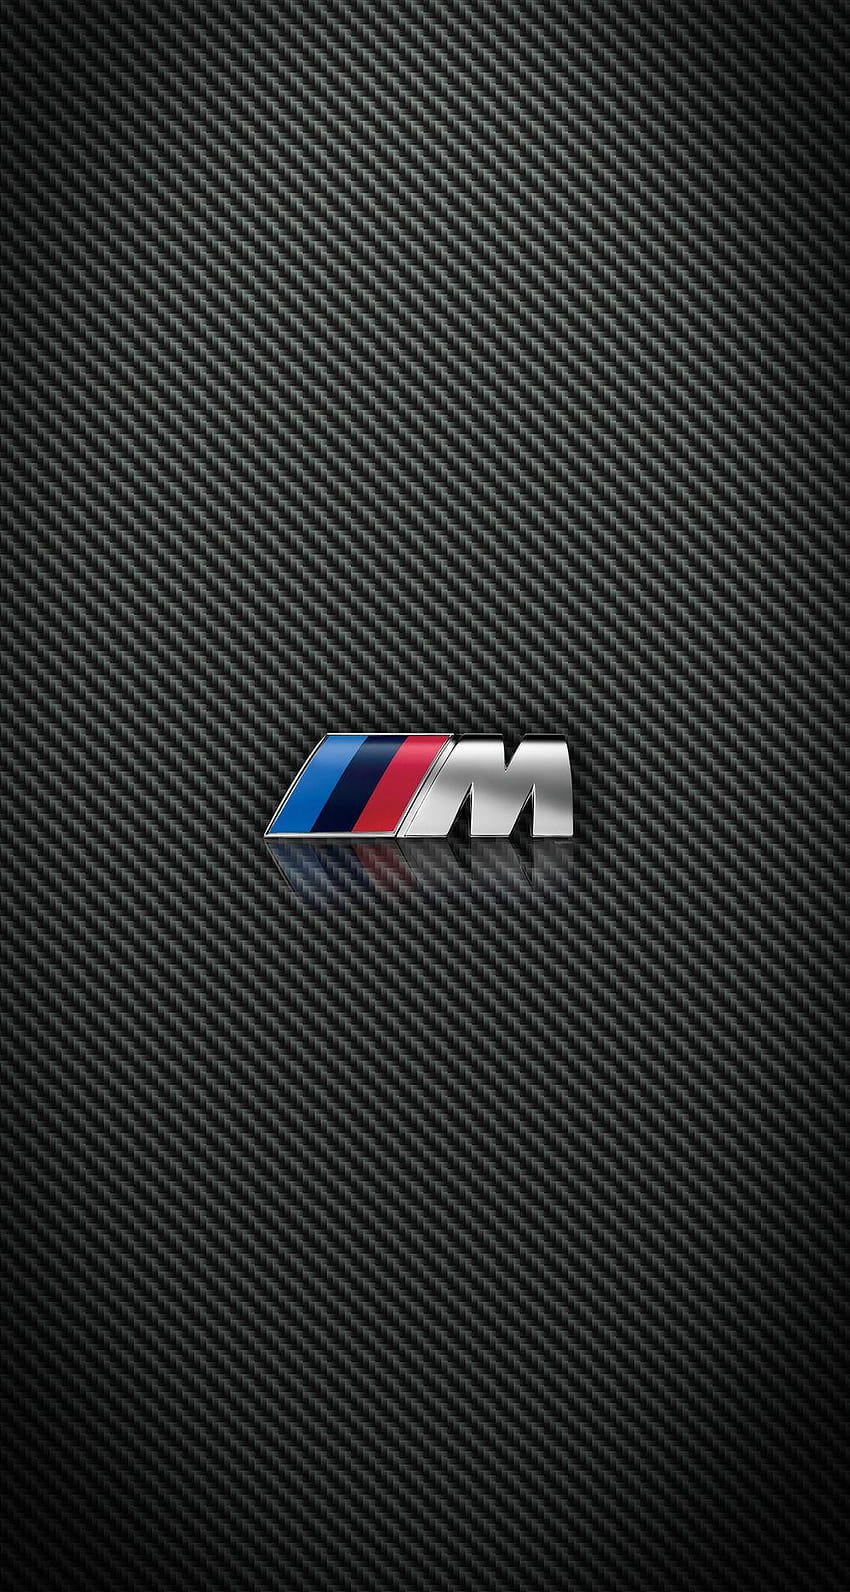 Fibra de Carbono BMW y M Power iPhone para iPhone 6 Plus fondo de pantalla del teléfono